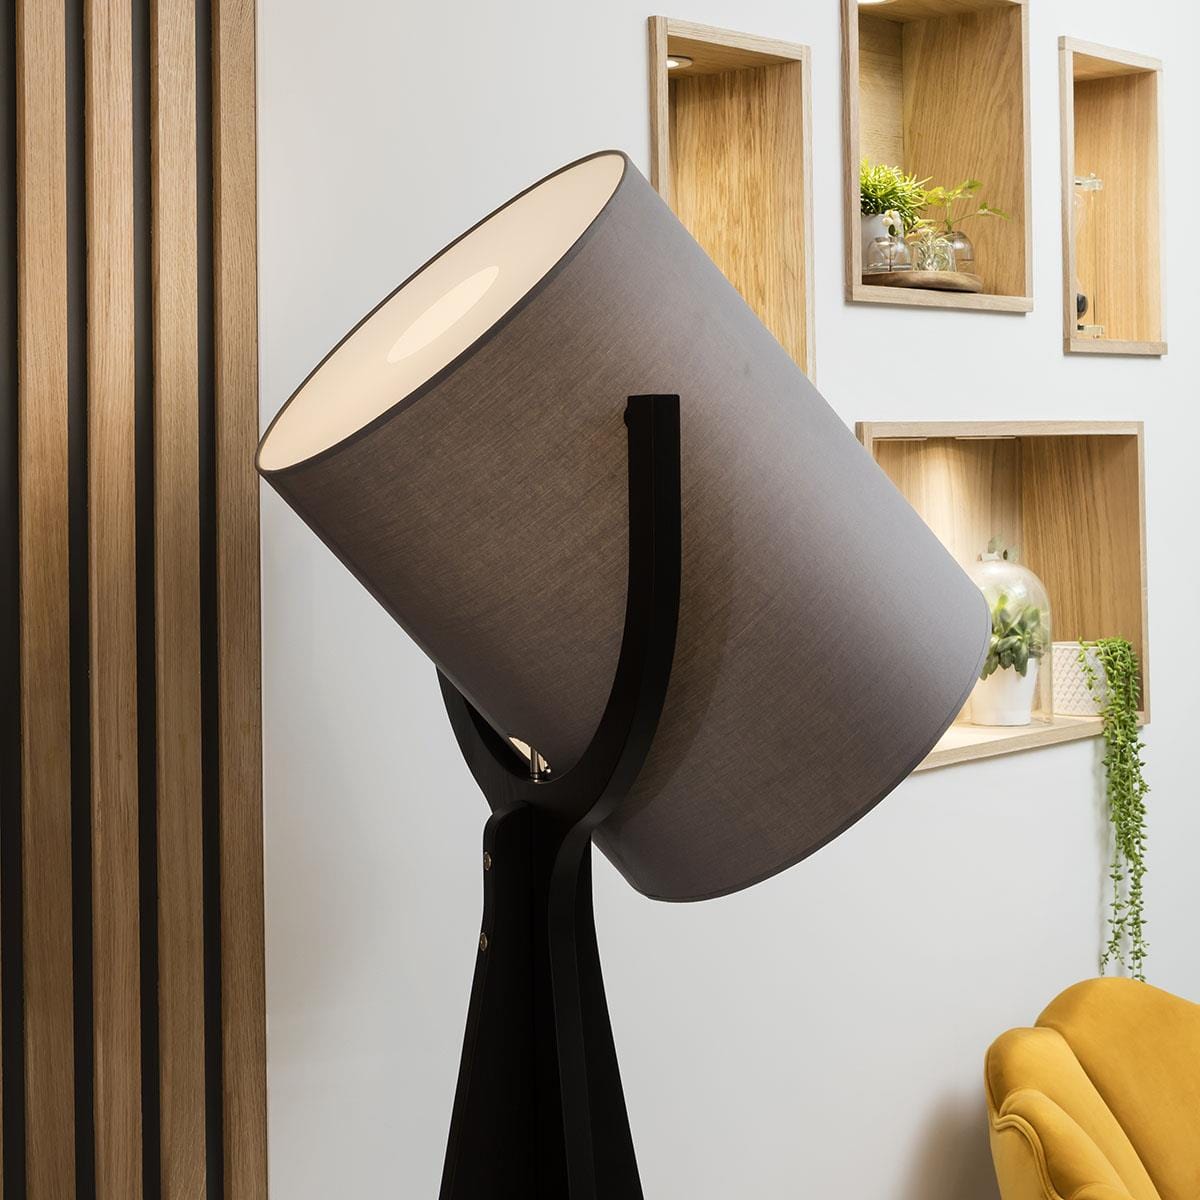 Quatropi Quatropi Large Tripod Floor Lamp 190cm Black - Adjustable Fabric Grey Shade